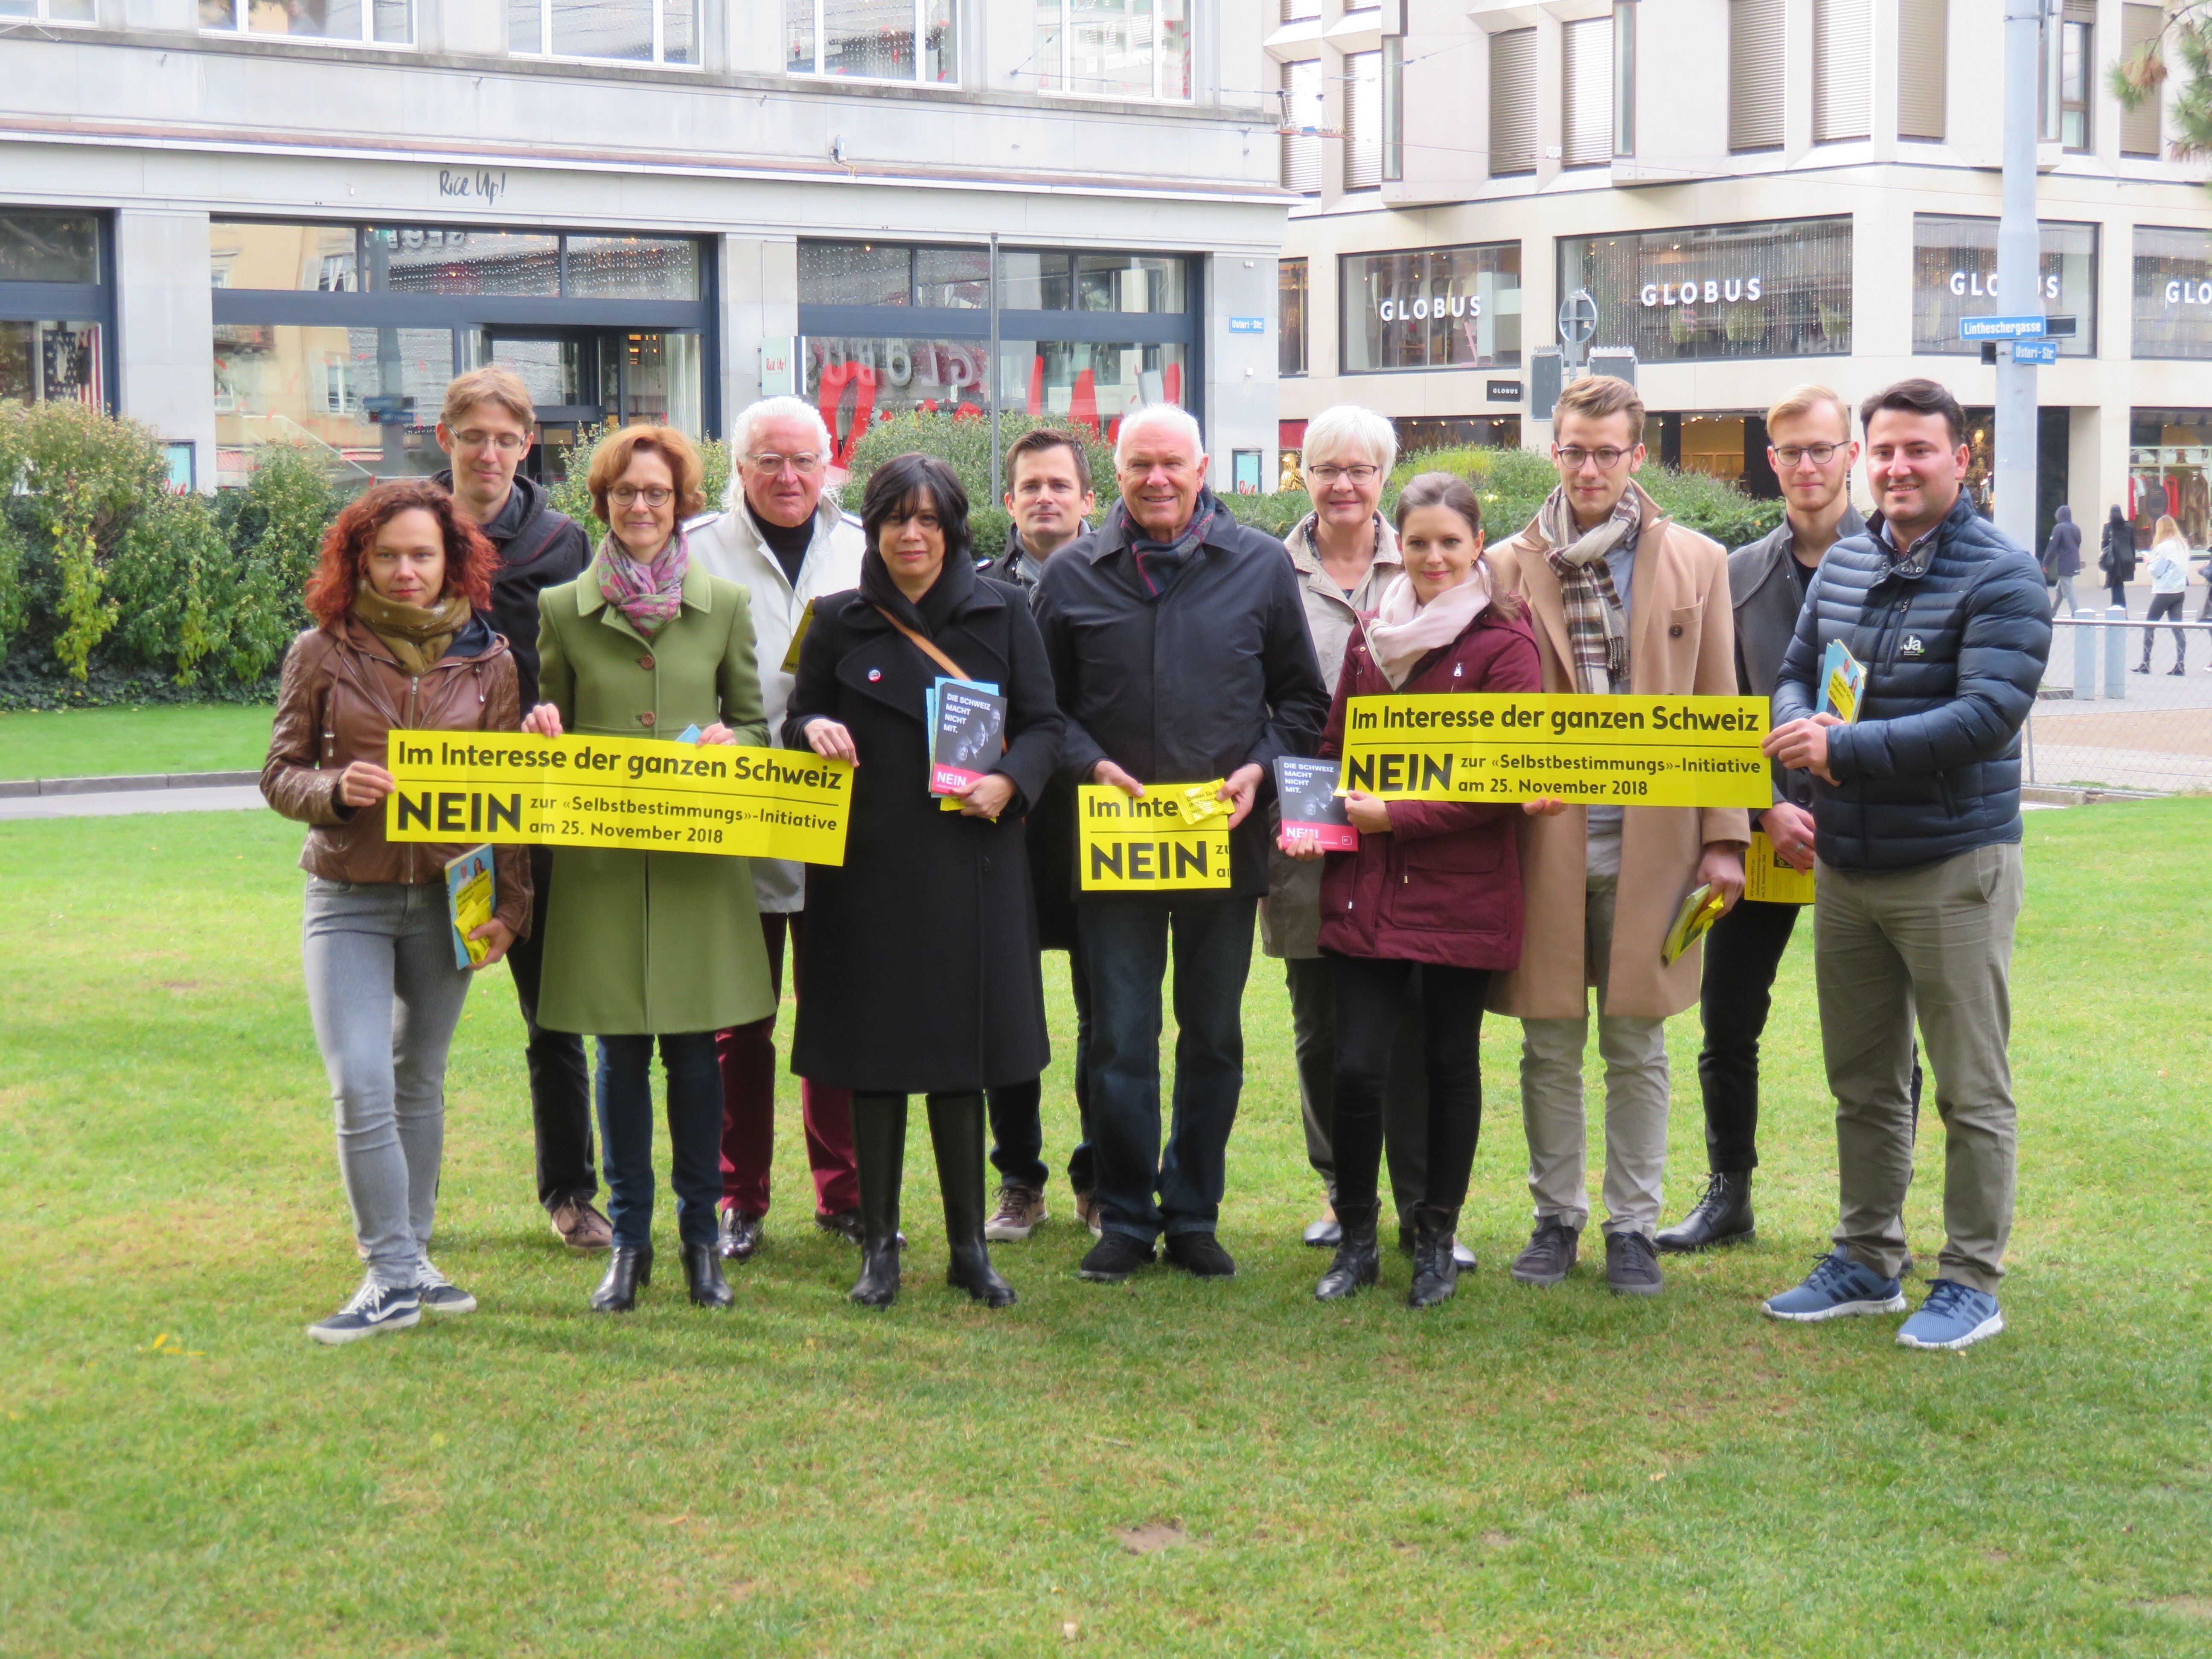 Giornata d'azione Iniziativa per l'autodeterminazione a Zurigo